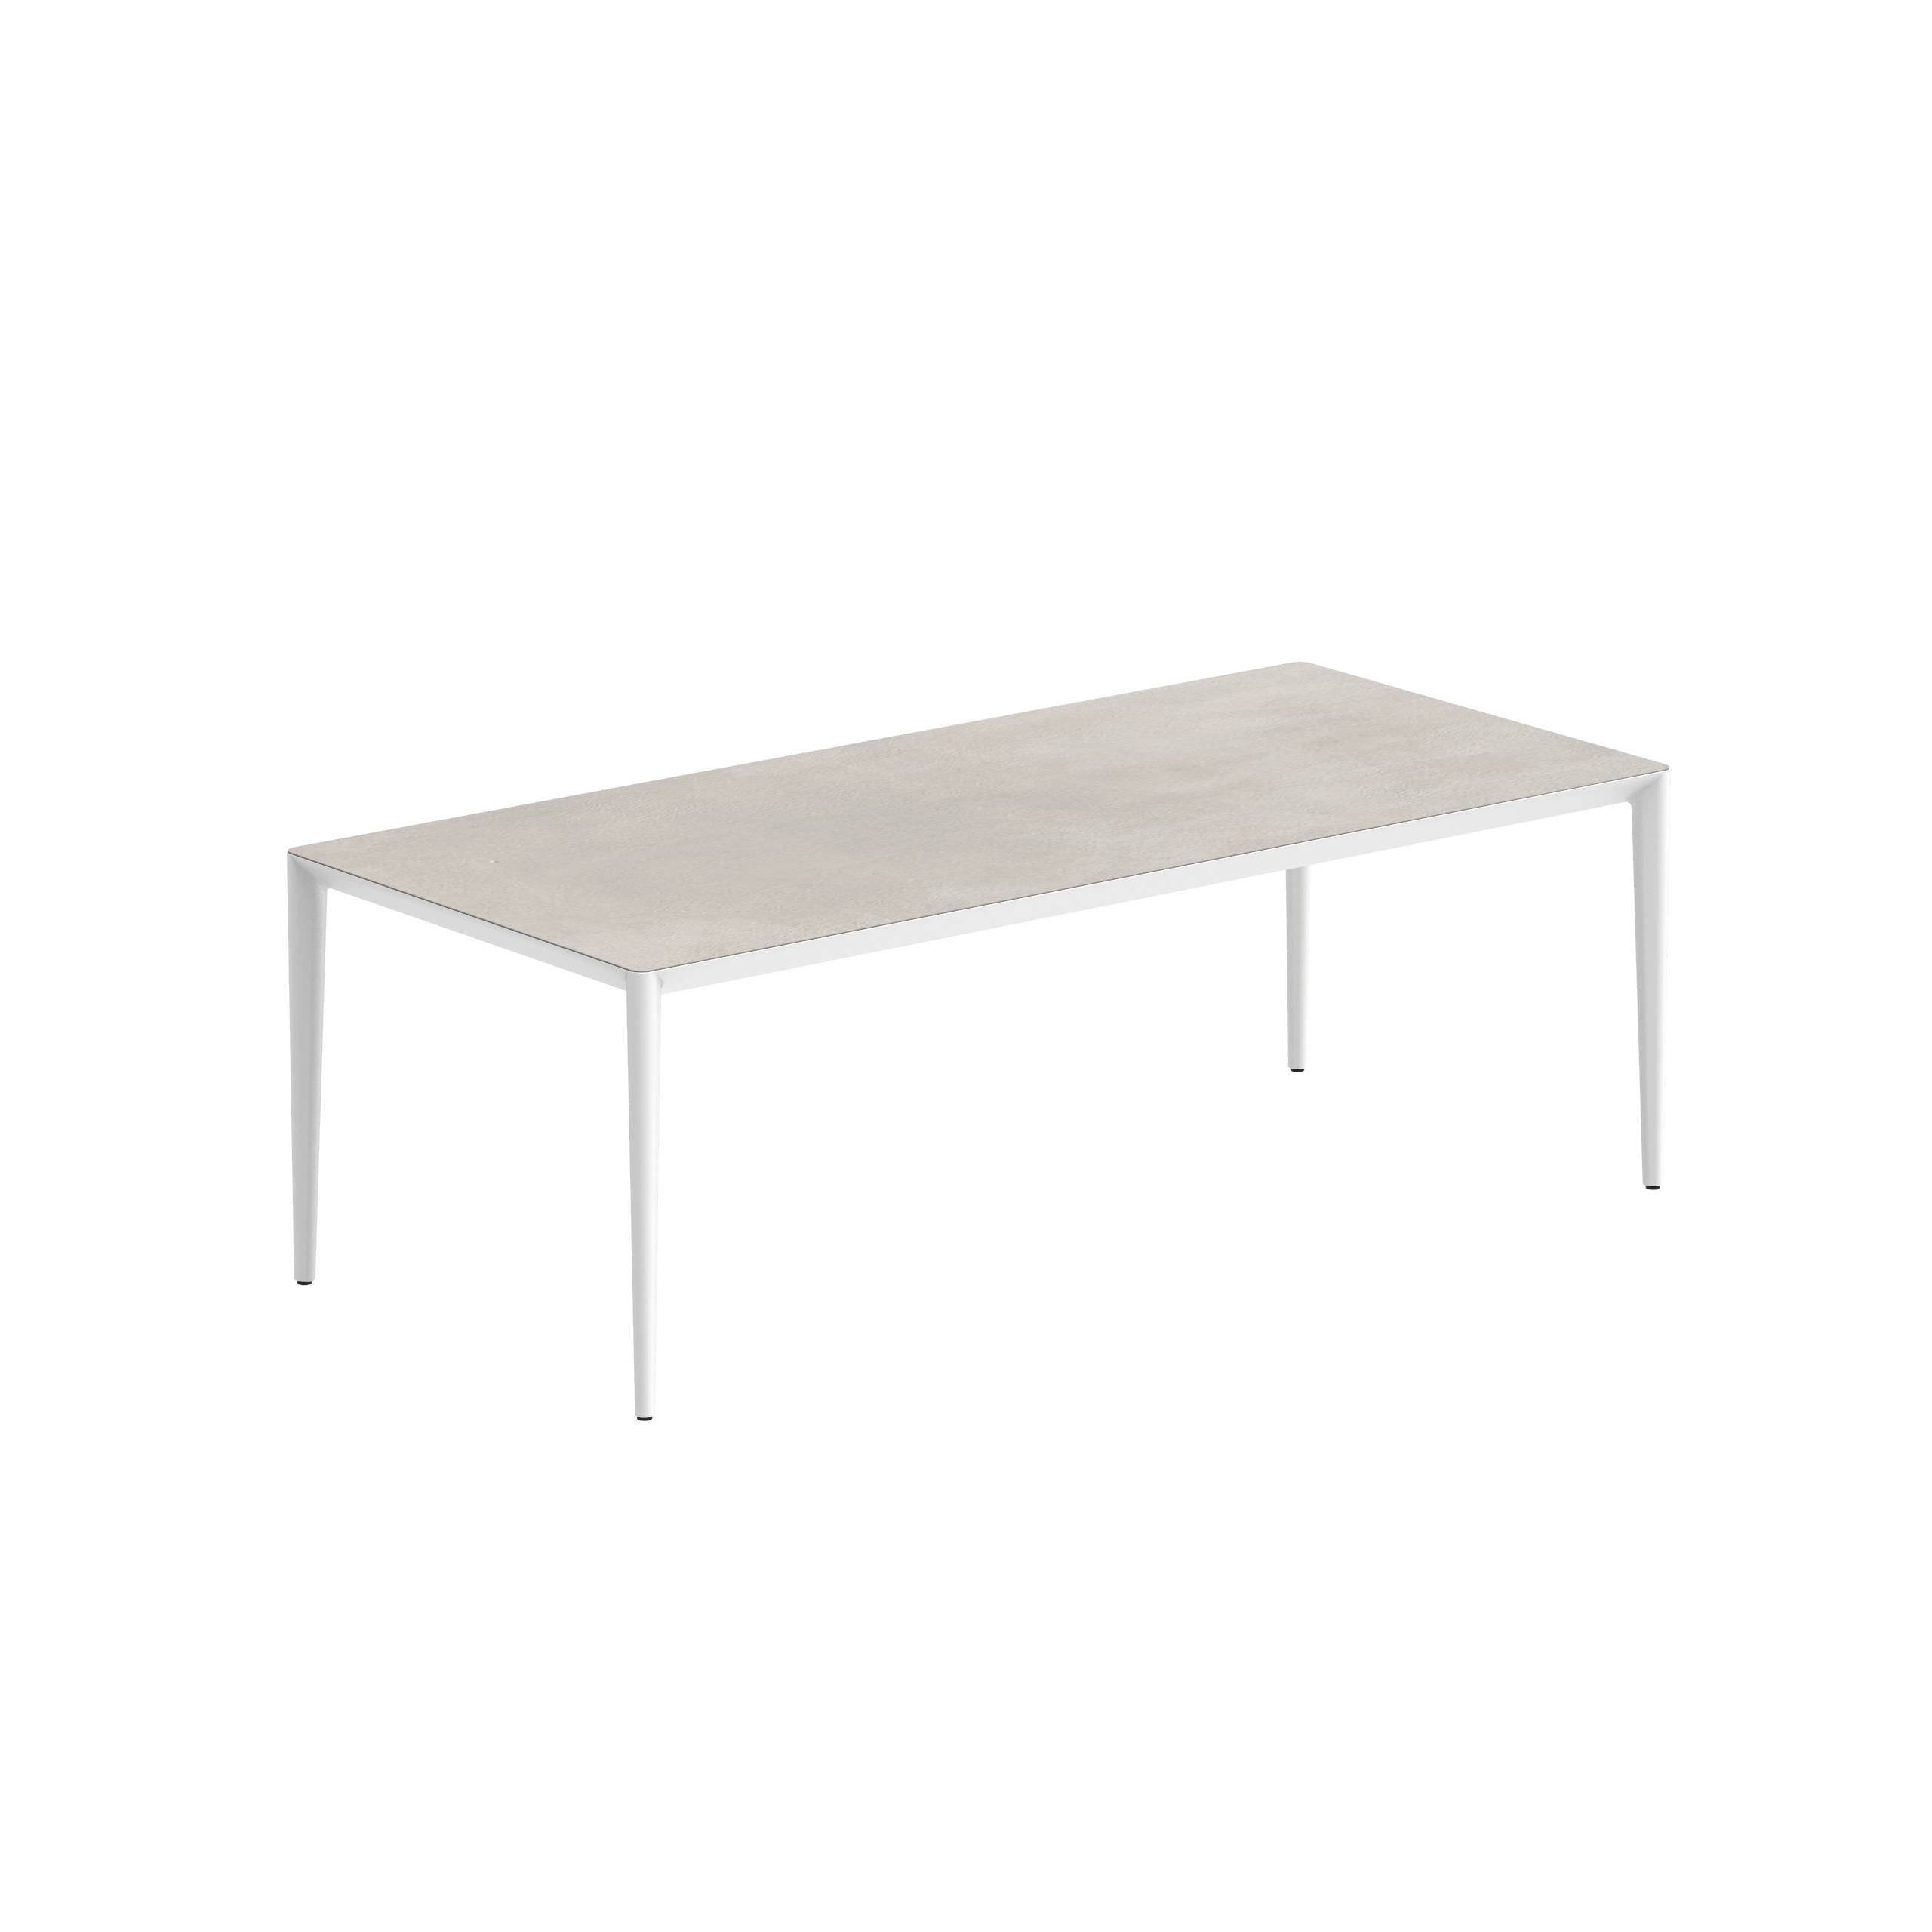 U-Nite Table 220x100cm White With Ceramic Tabletop In Bianco Statuario